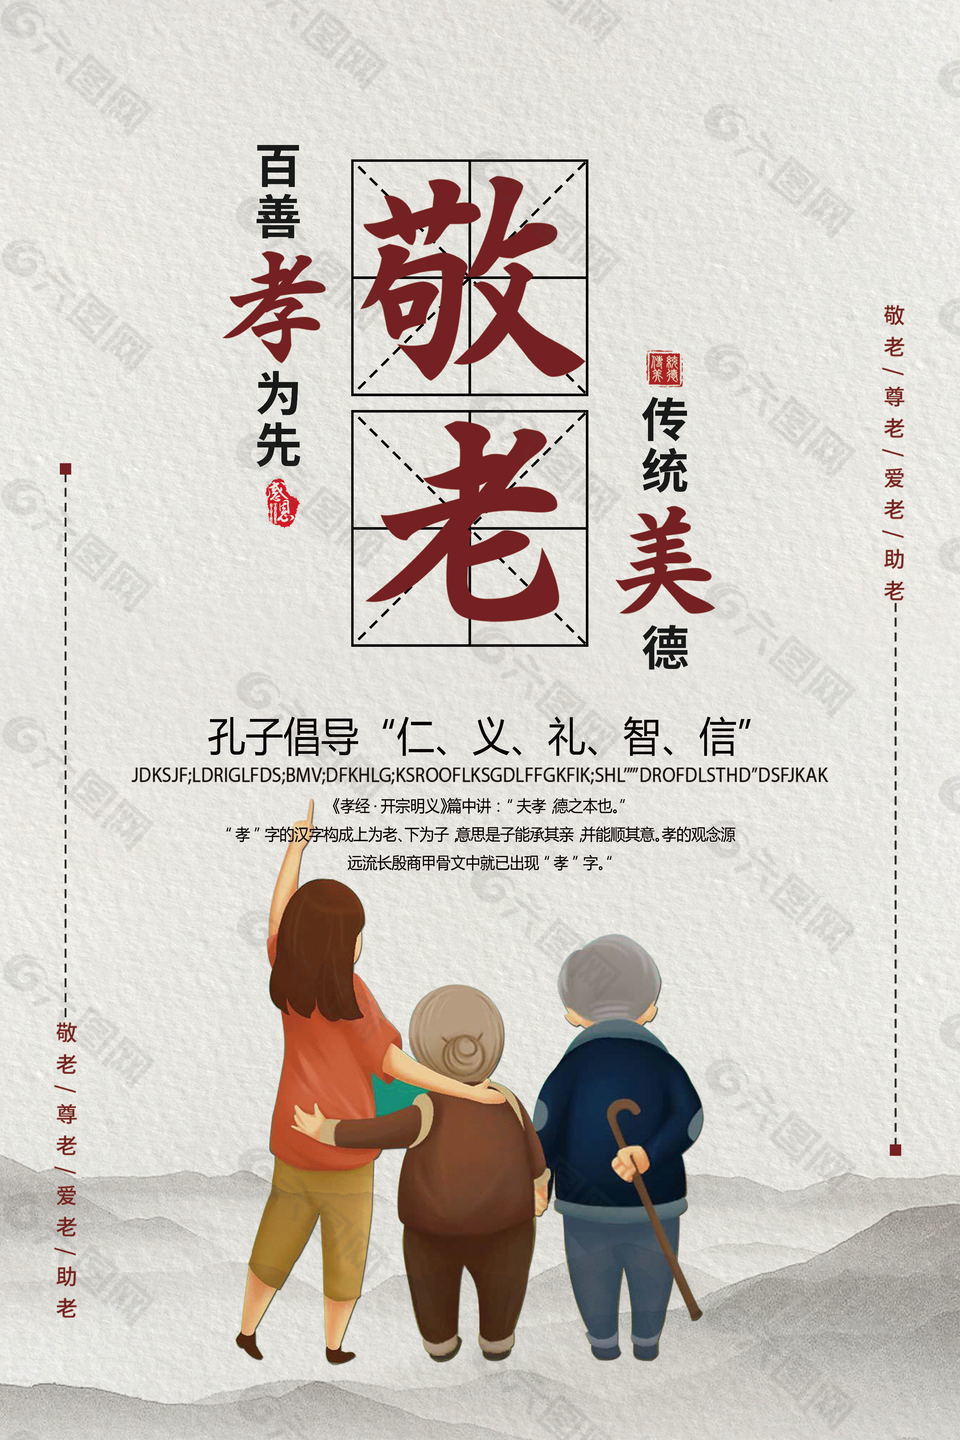 中国风孝道文化海报设计